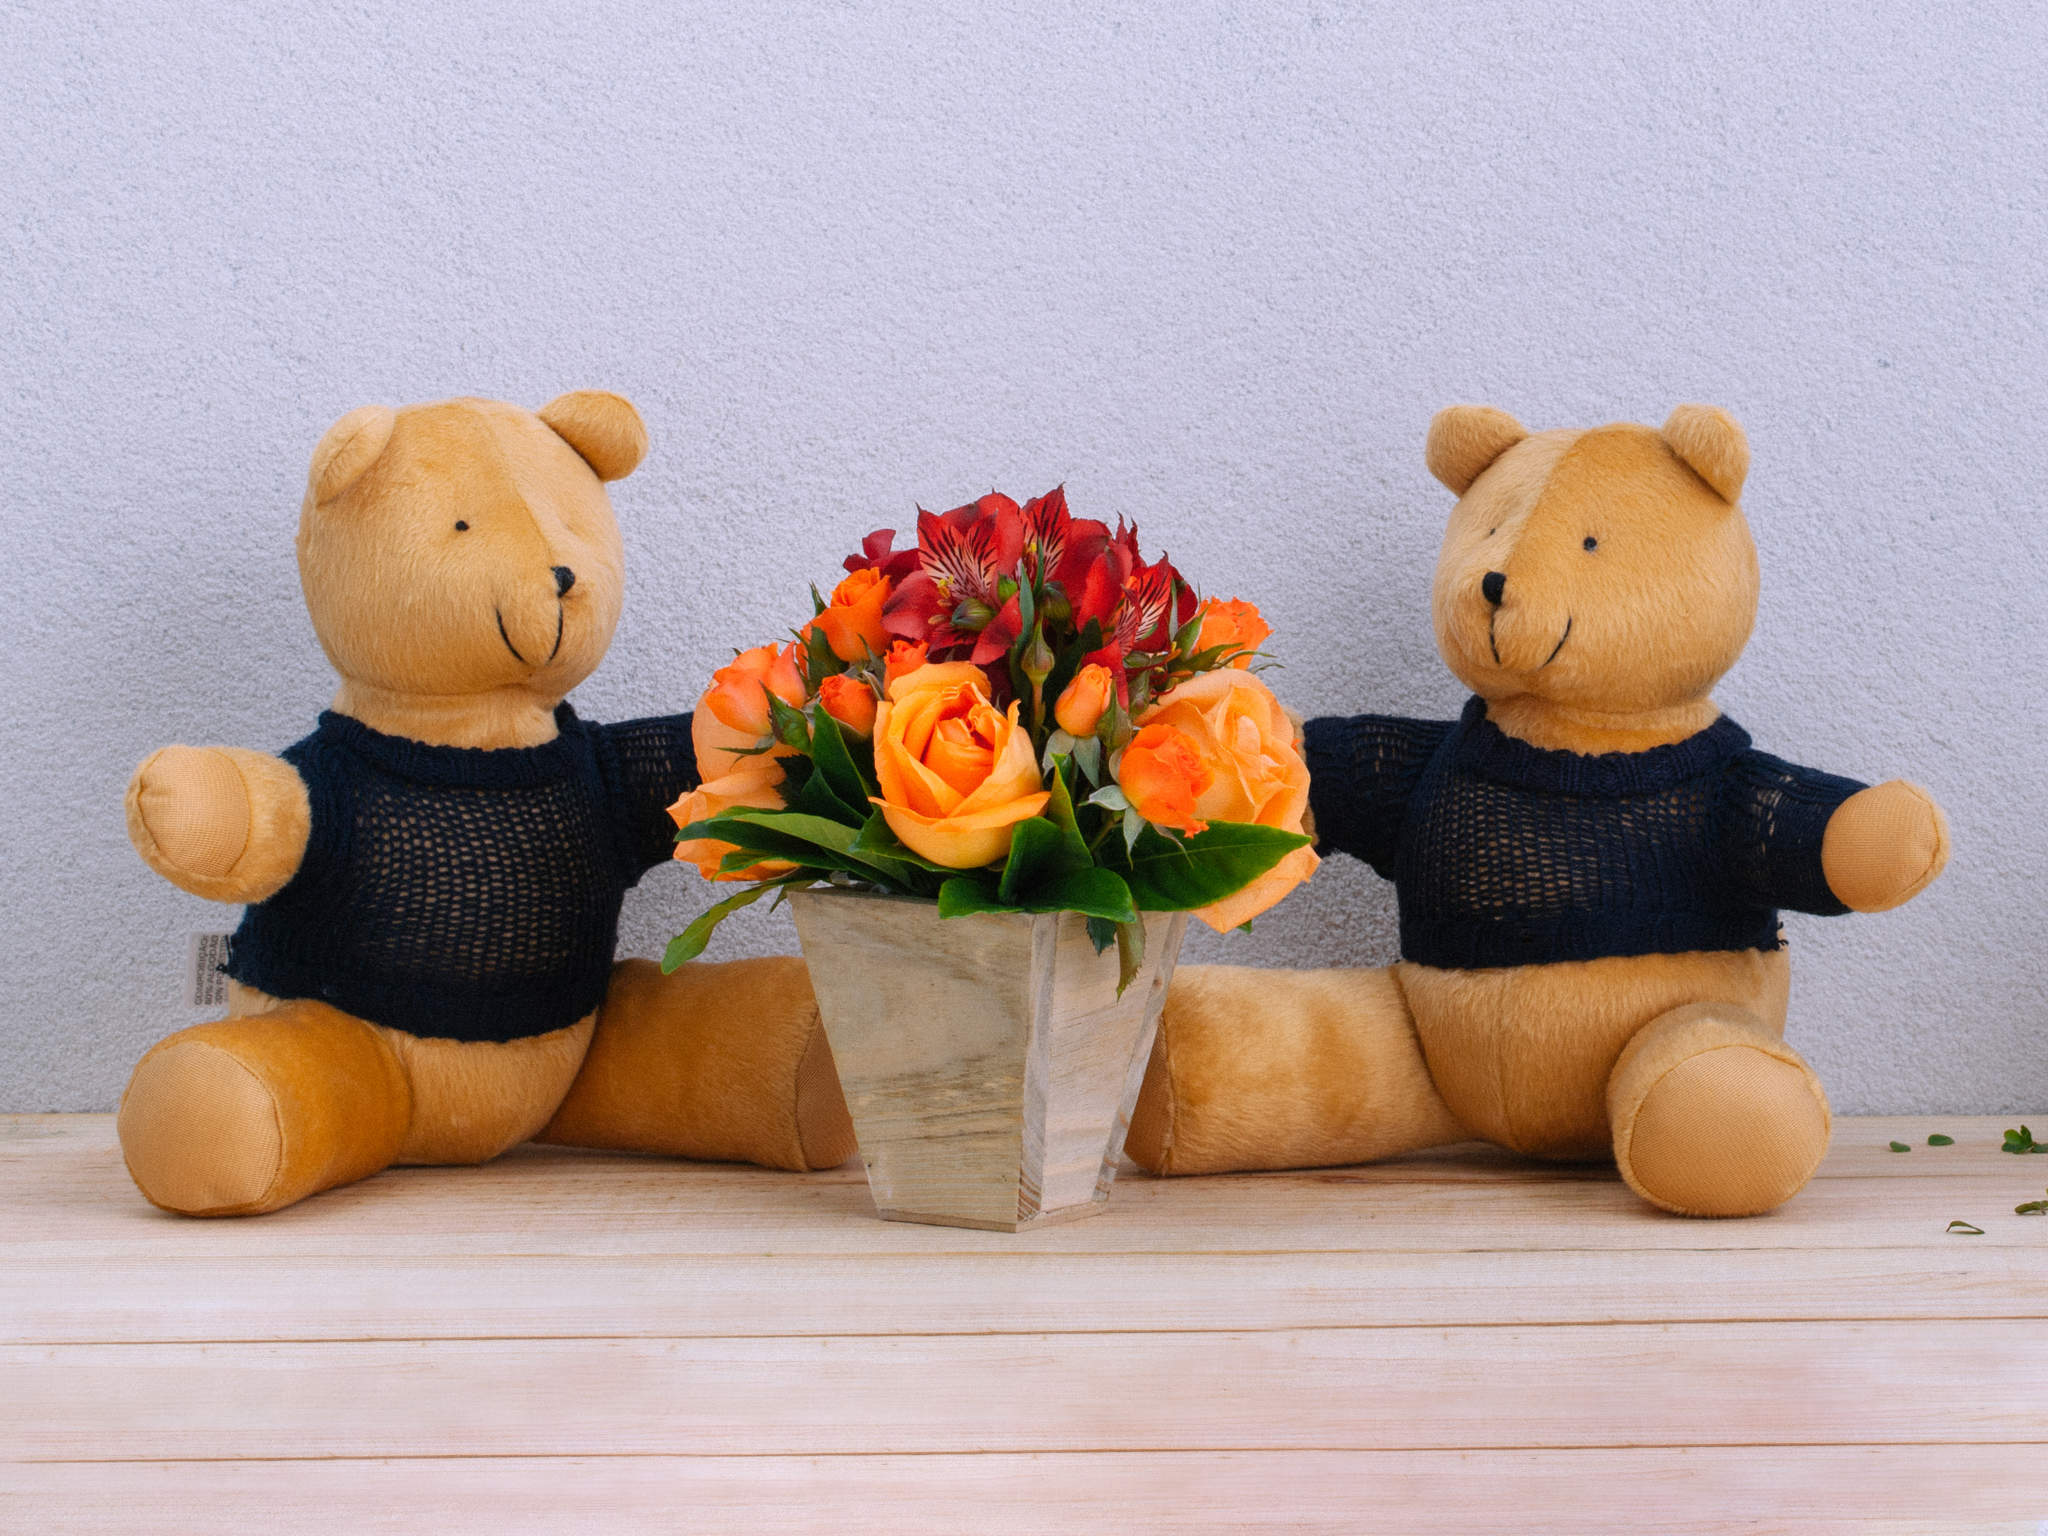 Arranjo de Flores Coloridas em Vaso com 2 Ursos de Pelúcia